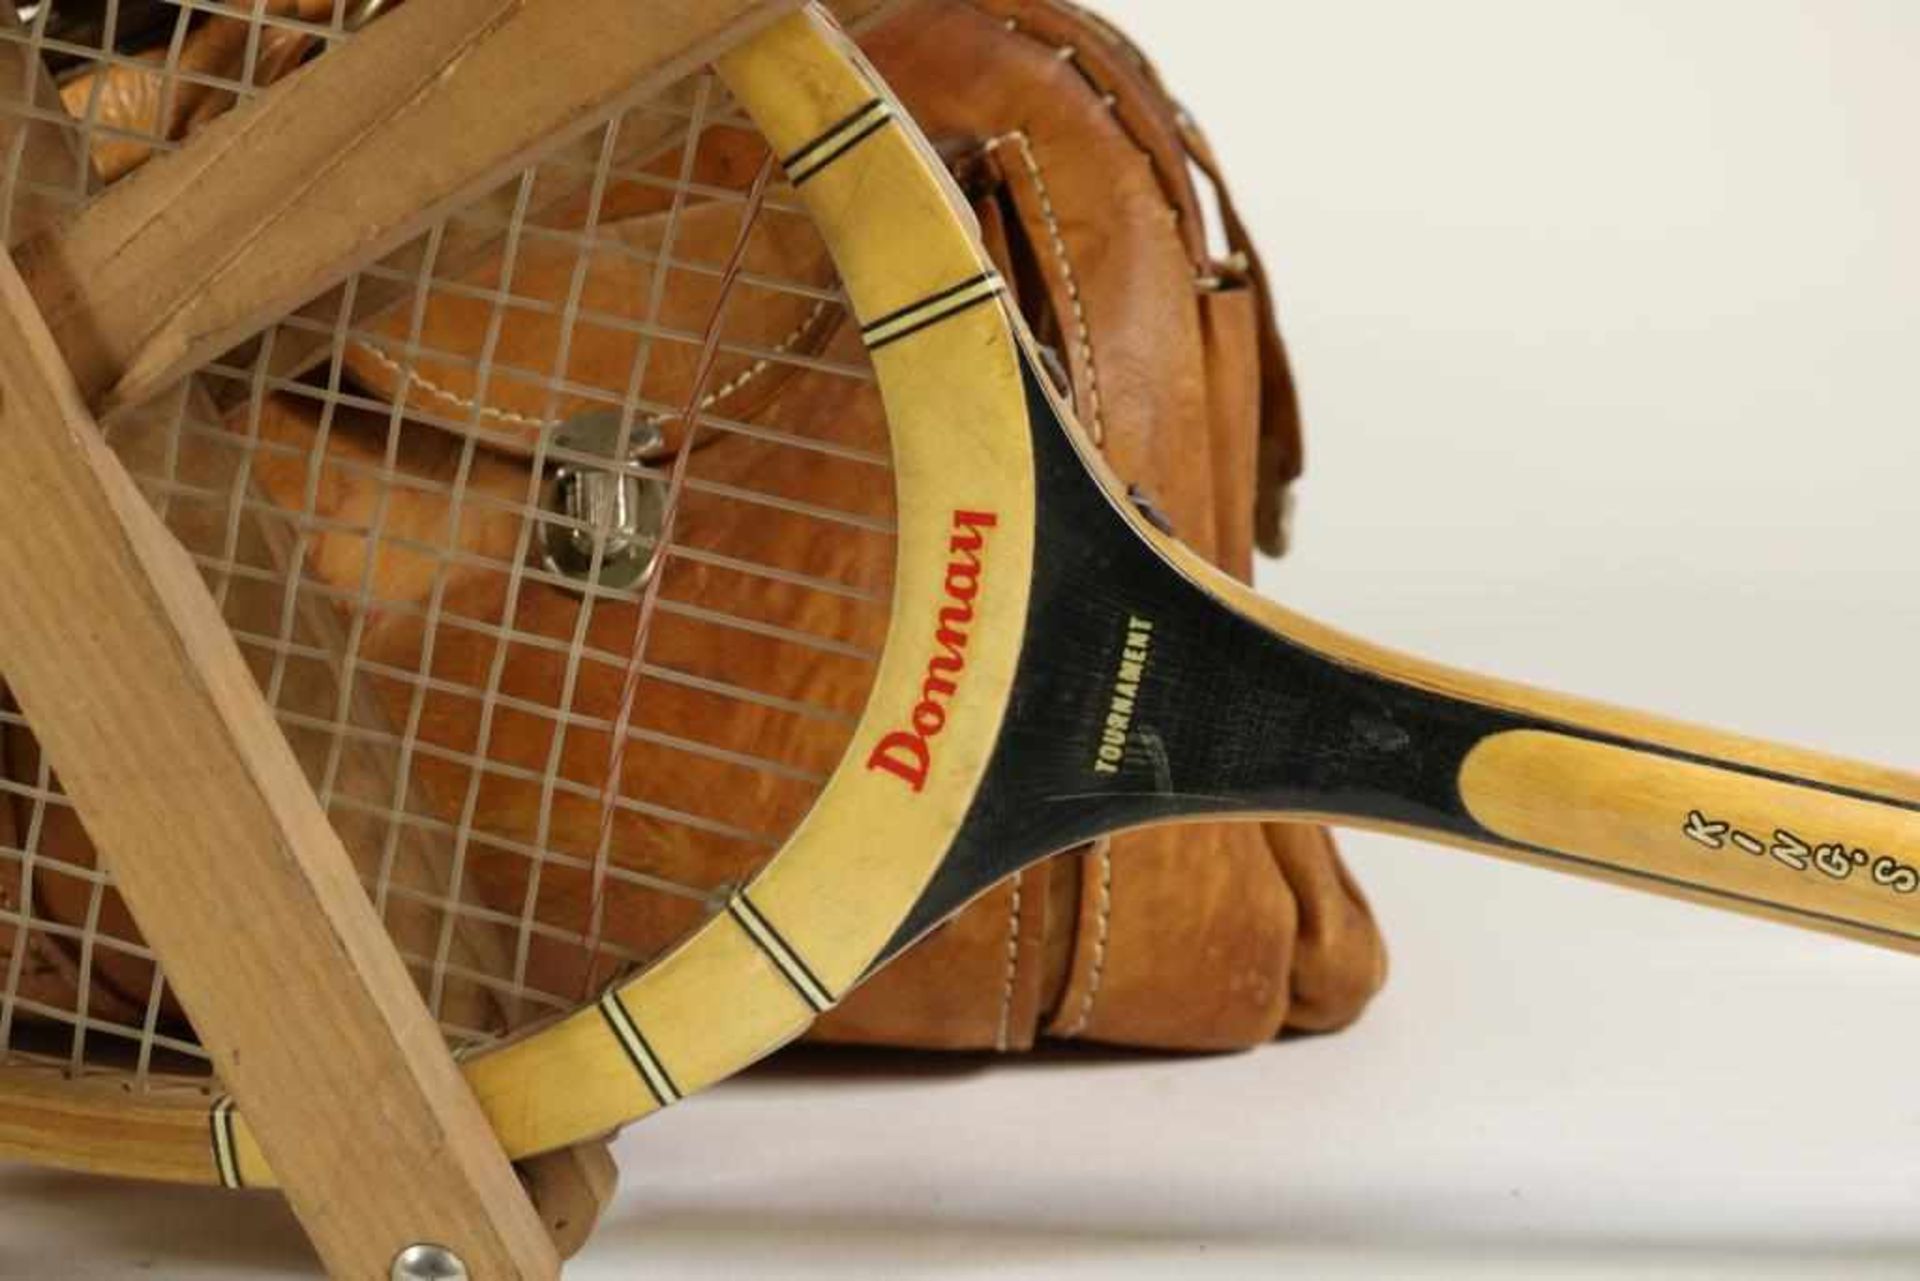 Vintage lederen sporttas en 2 tennis rackets, w.o. Donnay, 70-er jaren. - Bild 2 aus 4